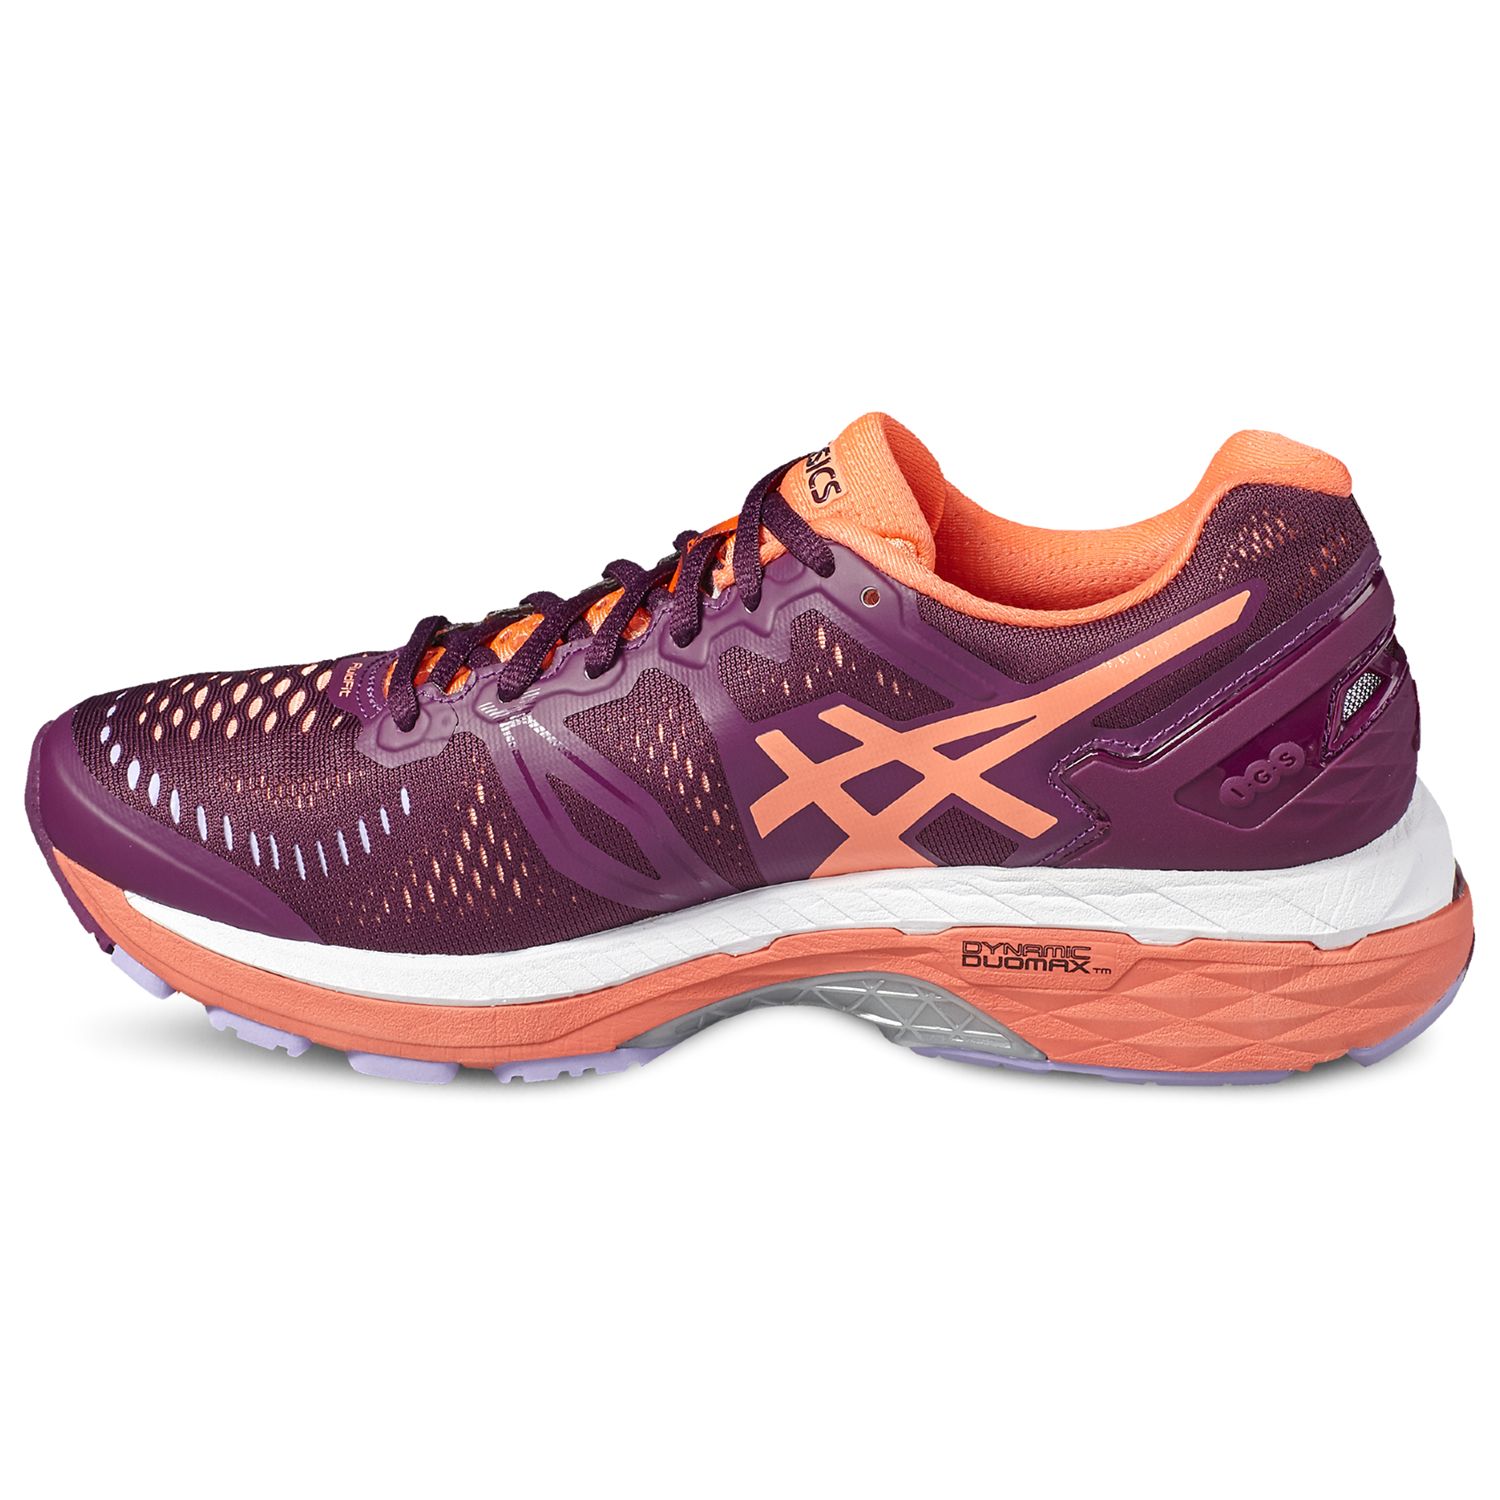 Asics Gel Kayano 23 Women S Running Shoes Purple Coral At John Lewis Partners